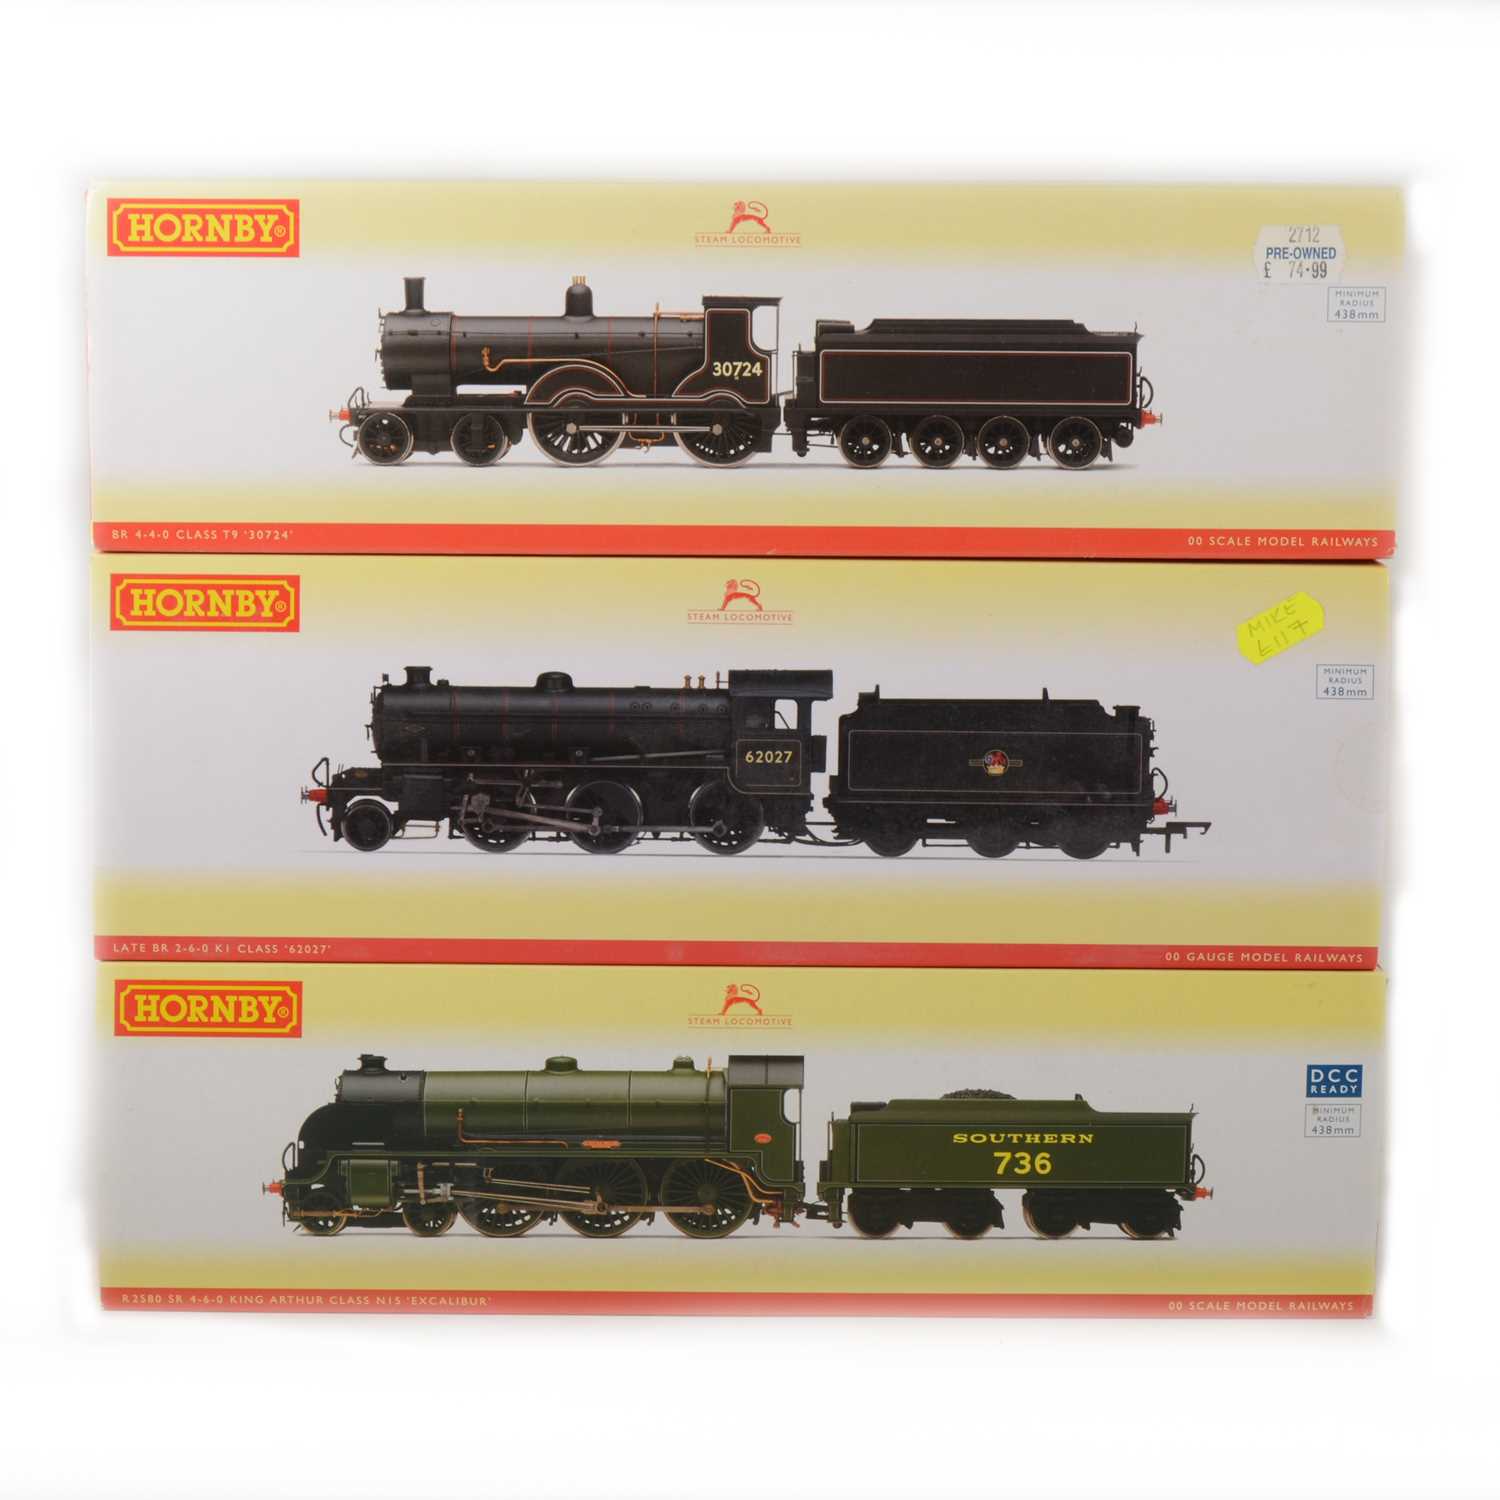 Lot 509 - Three Hornby OO gauge model railway locomotives, R3243A, R2580 amd R2712.